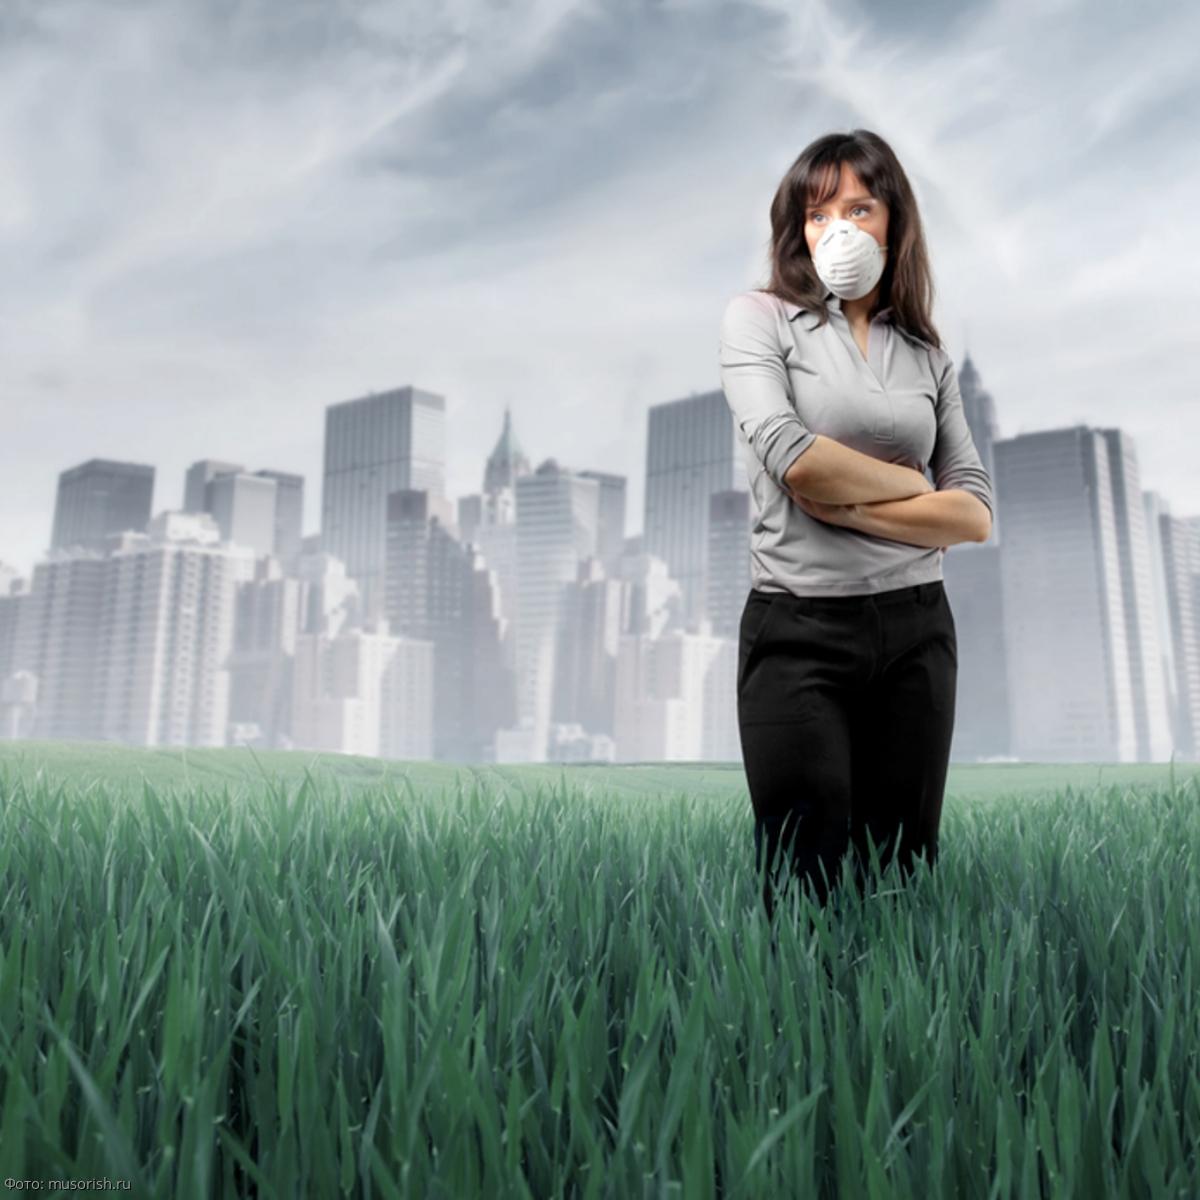 Китайское исследование подтверждает: Ухудшение качества воздуха означает увеличение числа самоубийств